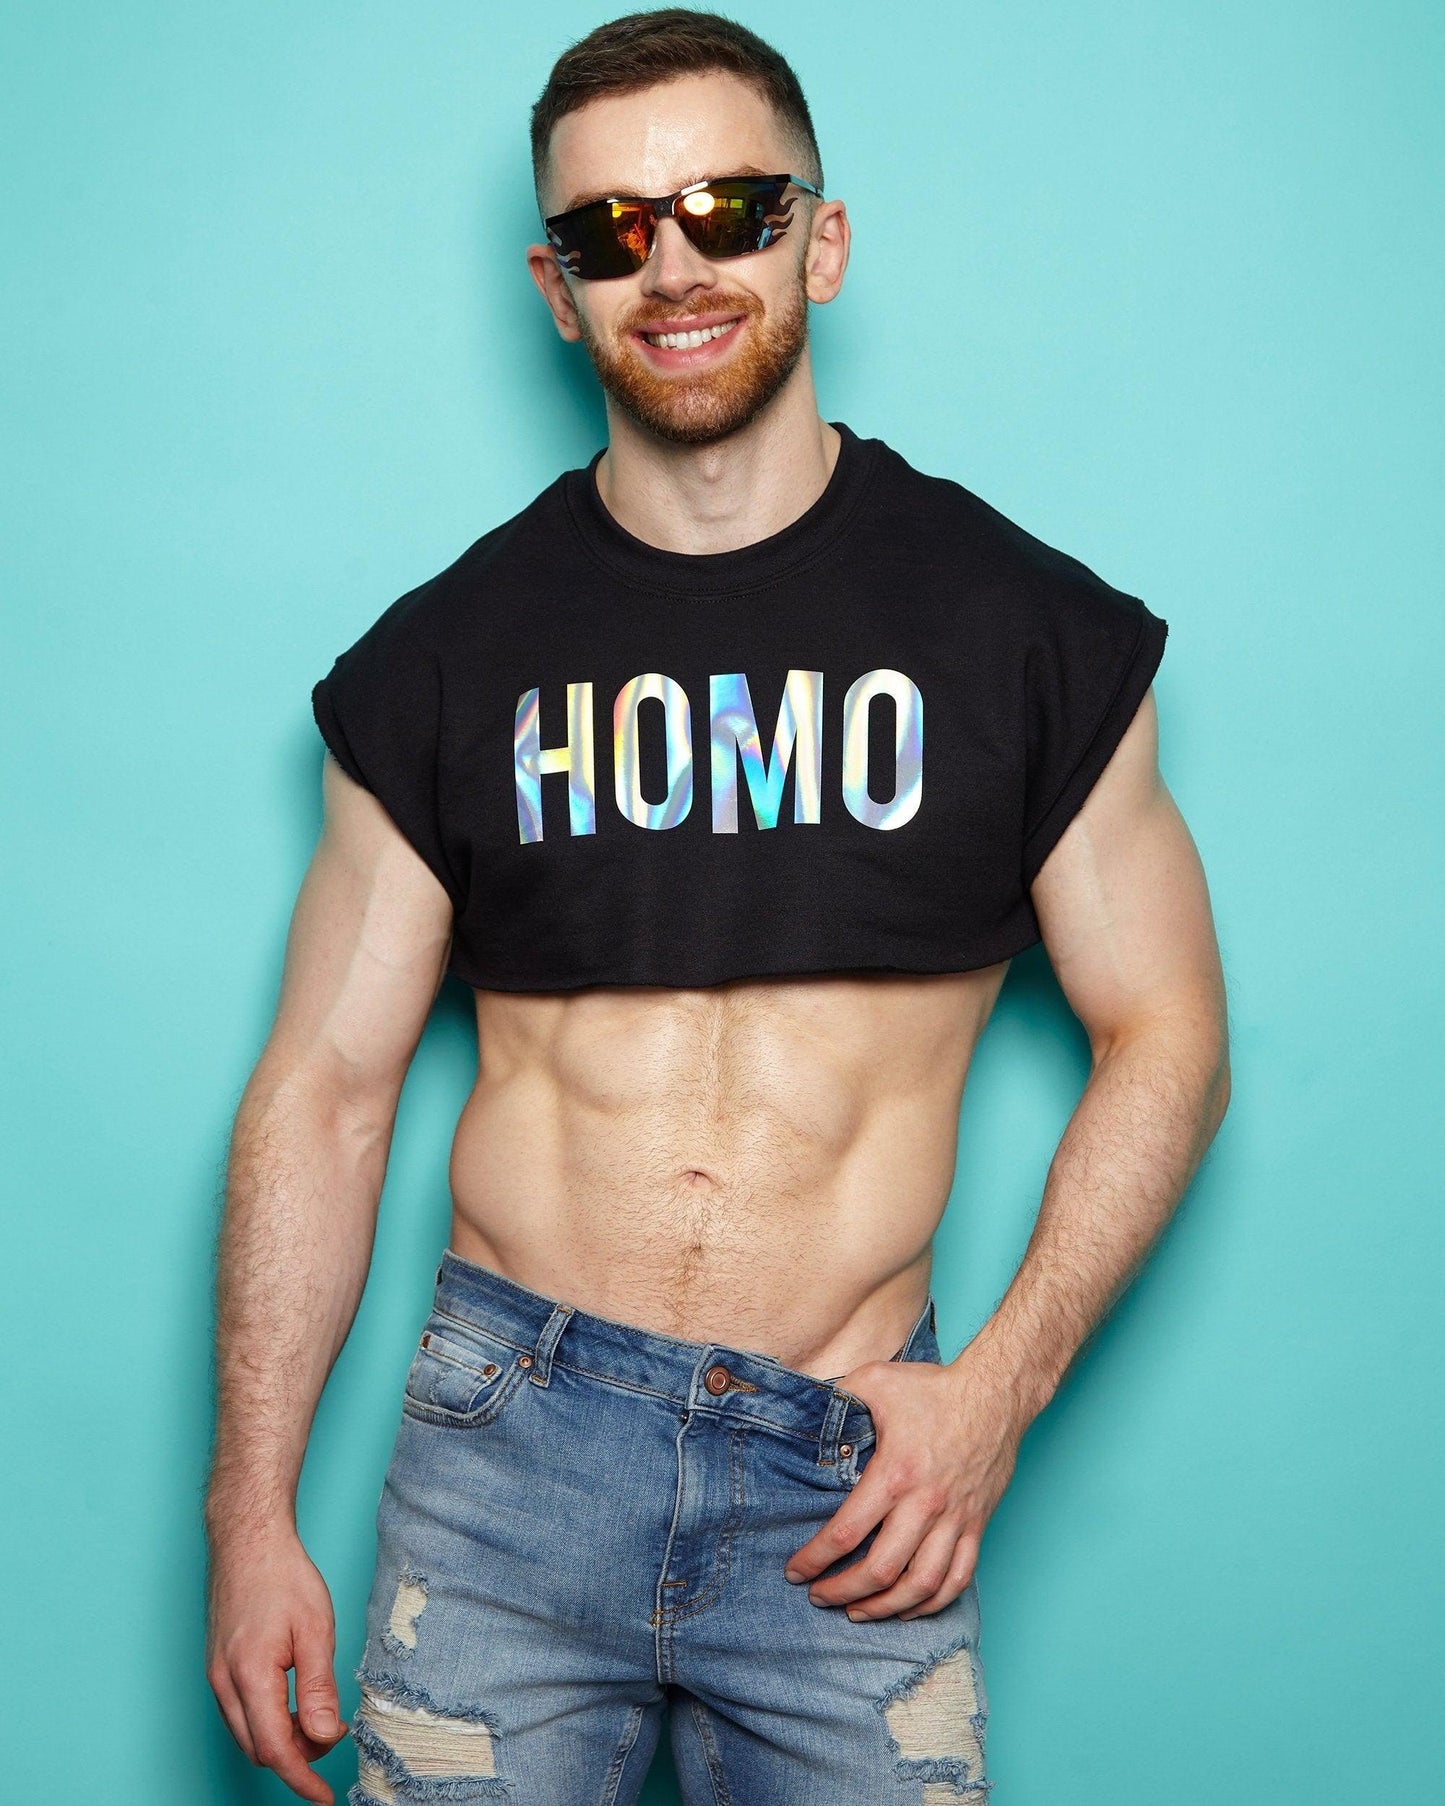 HOMO Retro Cut, Sweatshirt Crop Top - Hologram on Black